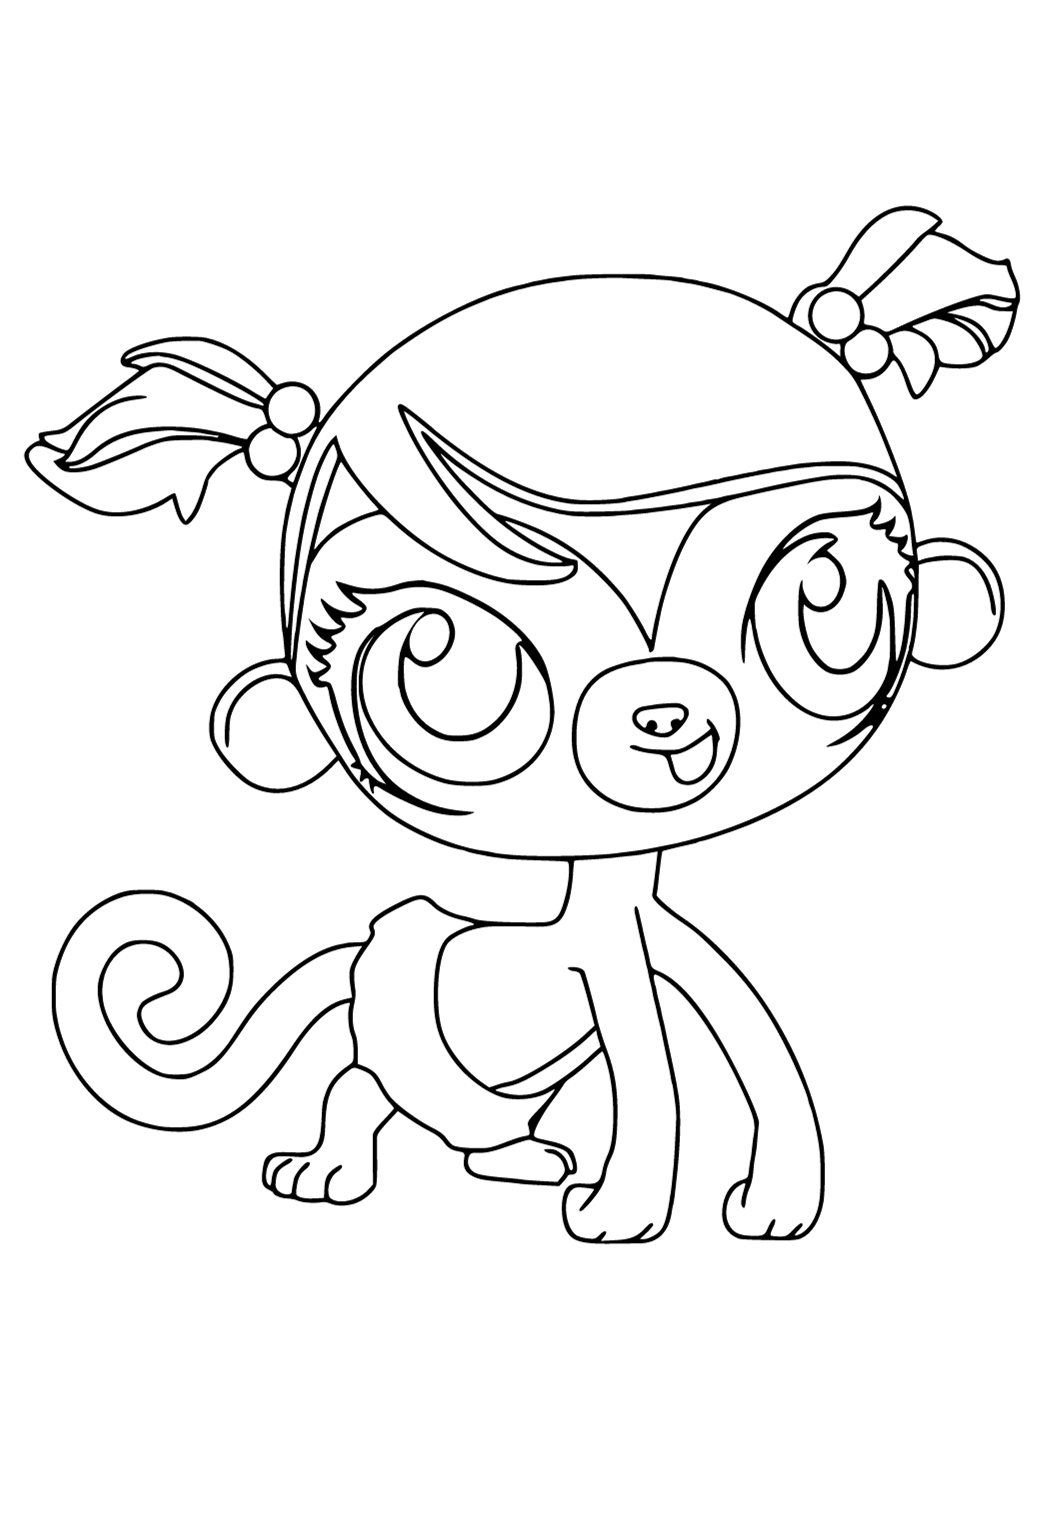 Desenho e Imagem O Menor Pet Shop Macaco para Colorir e Imprimir Grátis  para Adultos e Crianças 